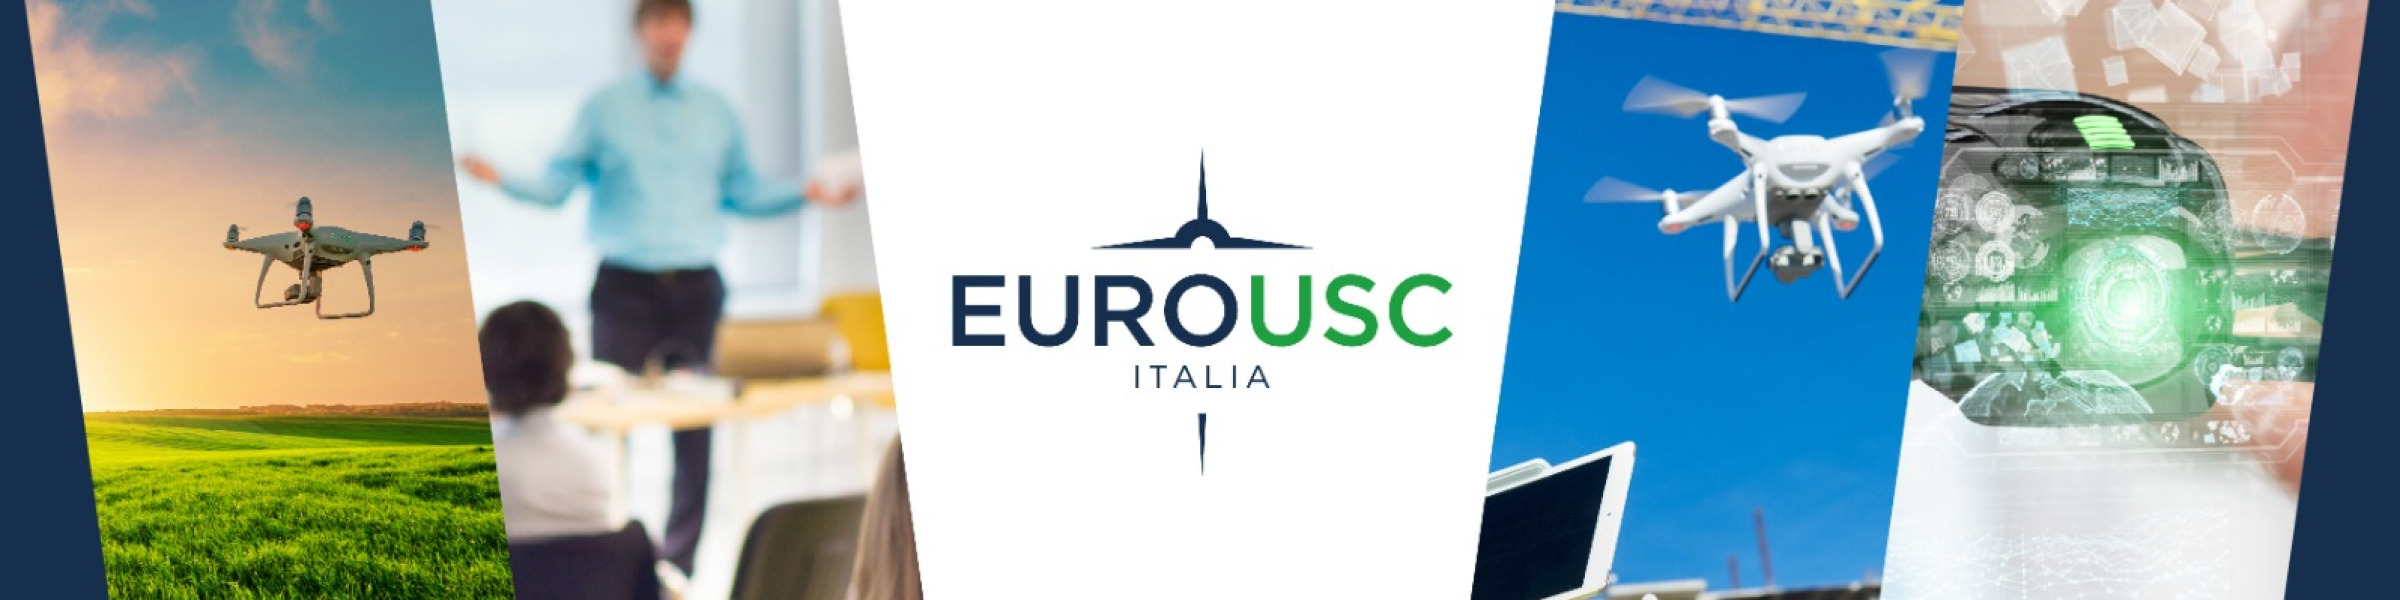 EuroUSC Italia Consultancy_Drone Major